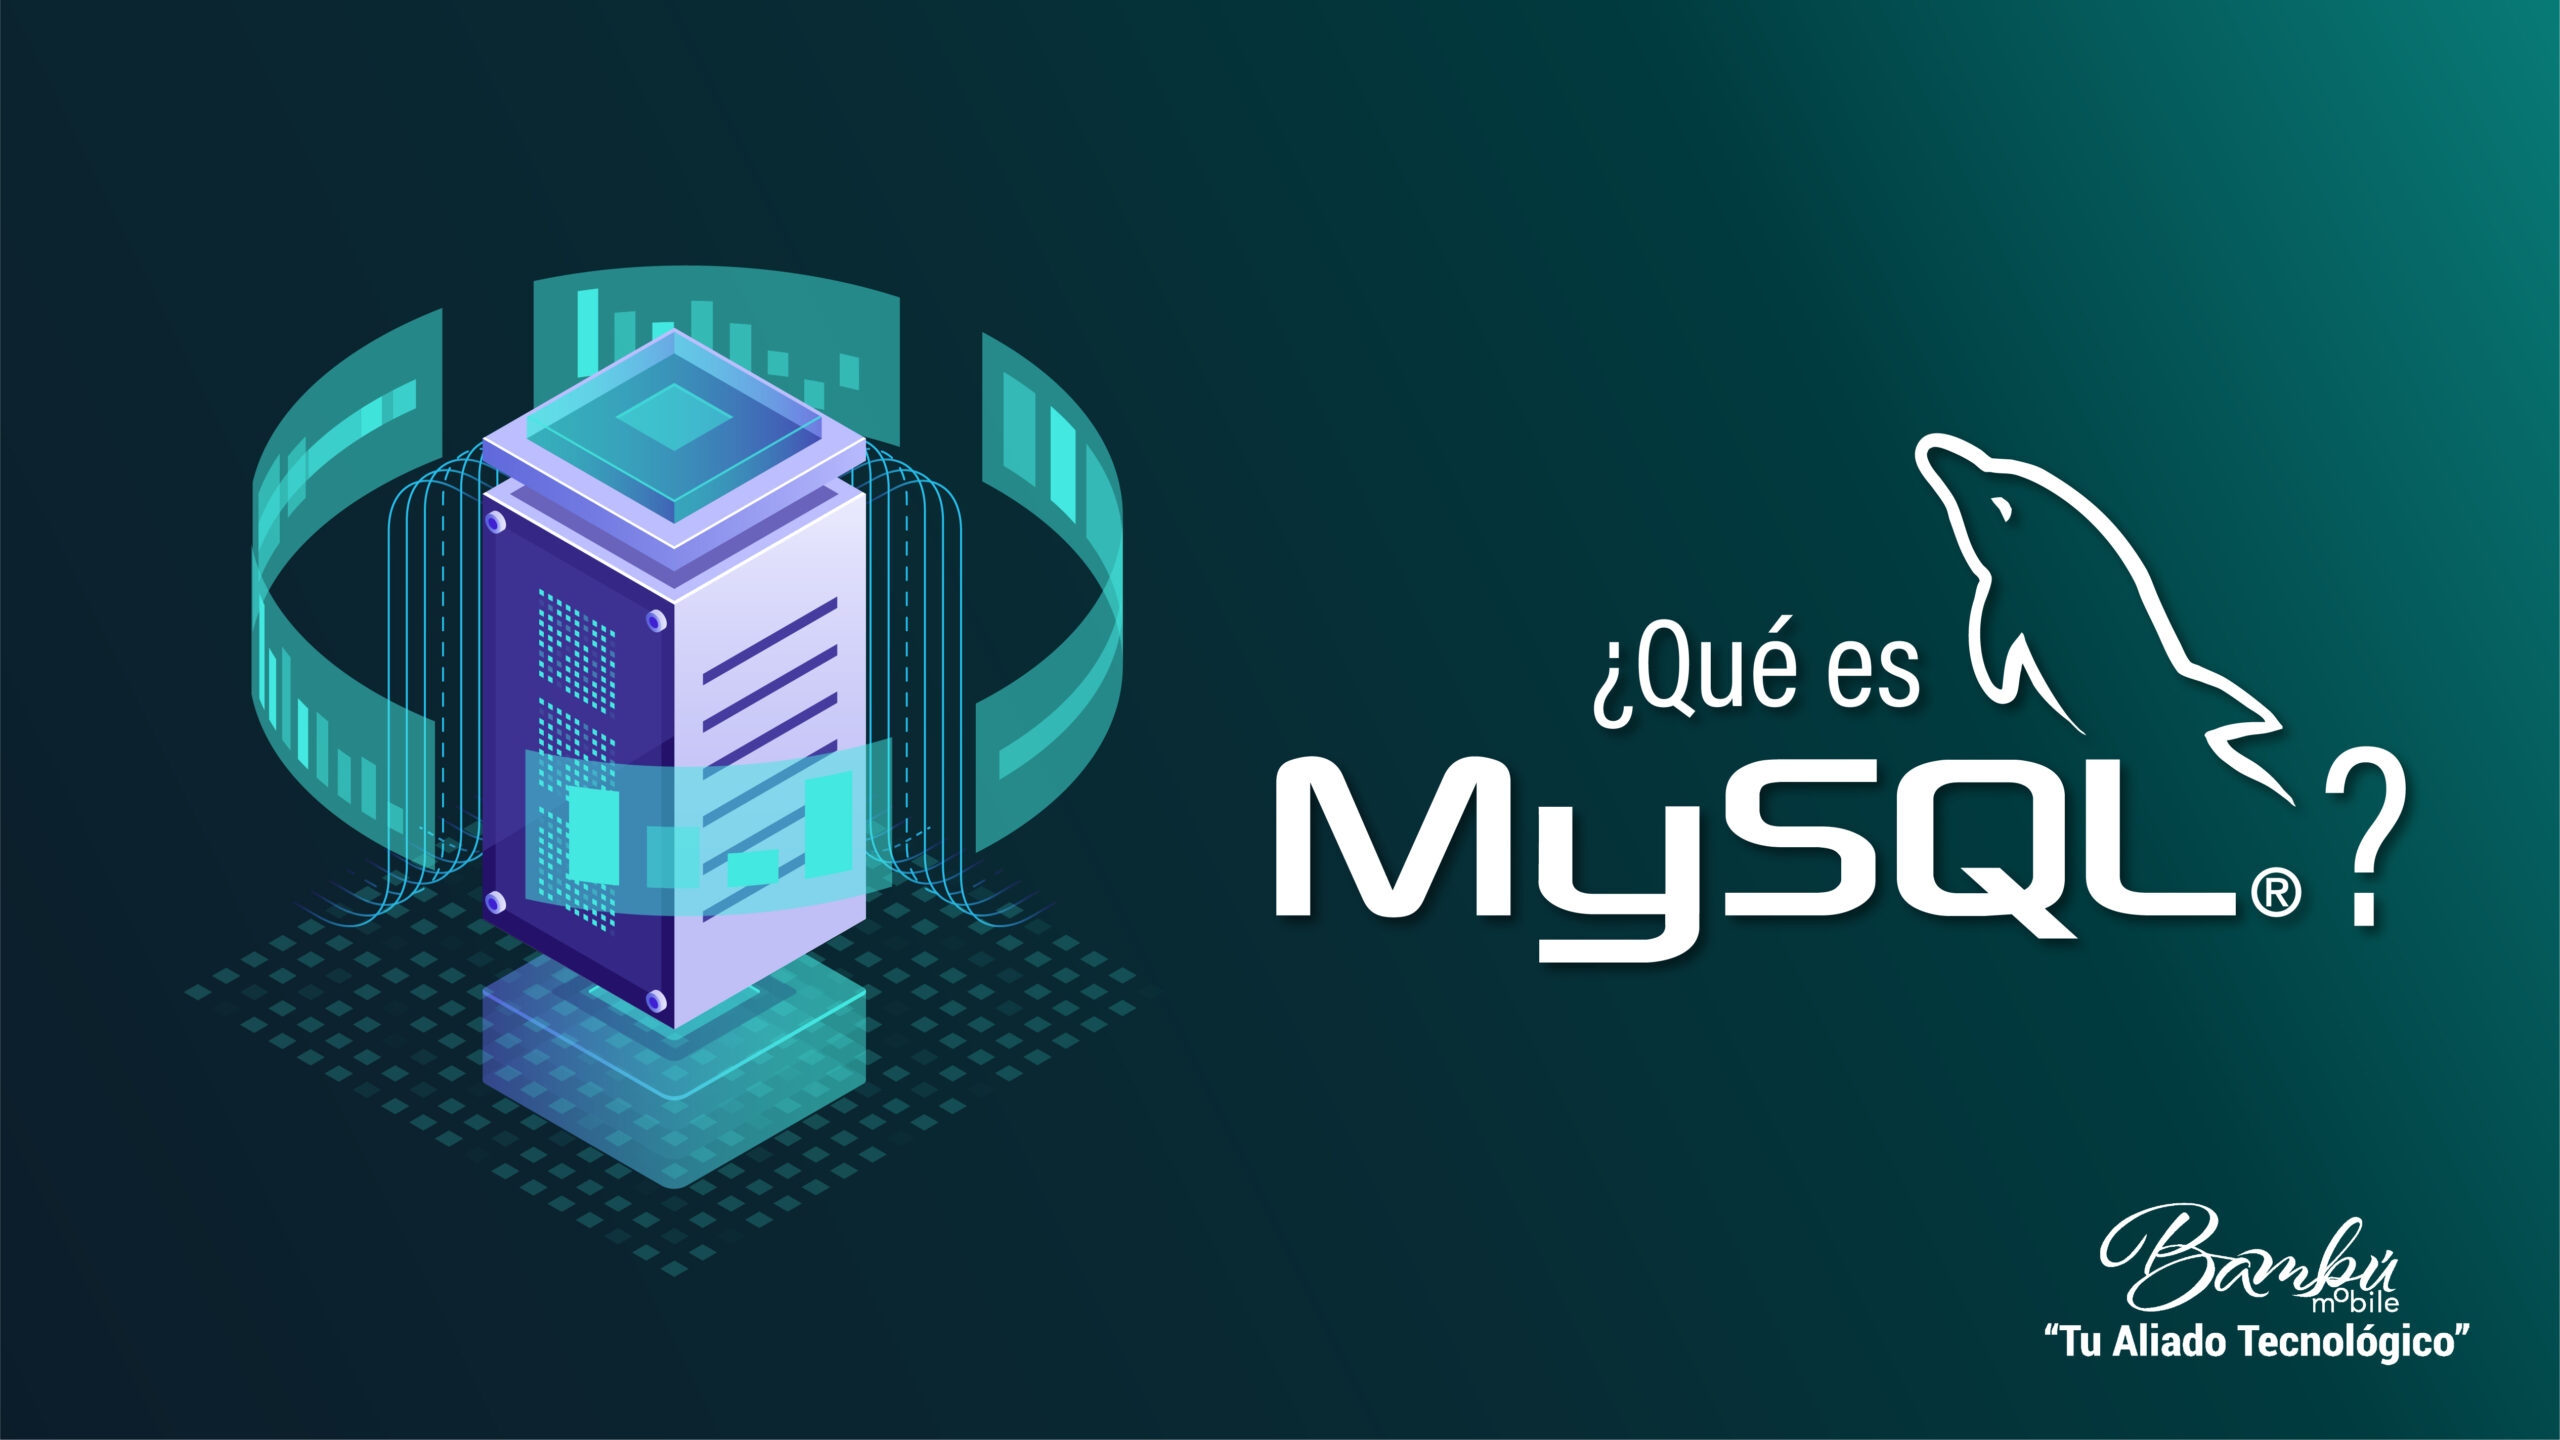 Que-es-MySQL-bases-de-datos-app-apps-dato-aplicaciones-scaled